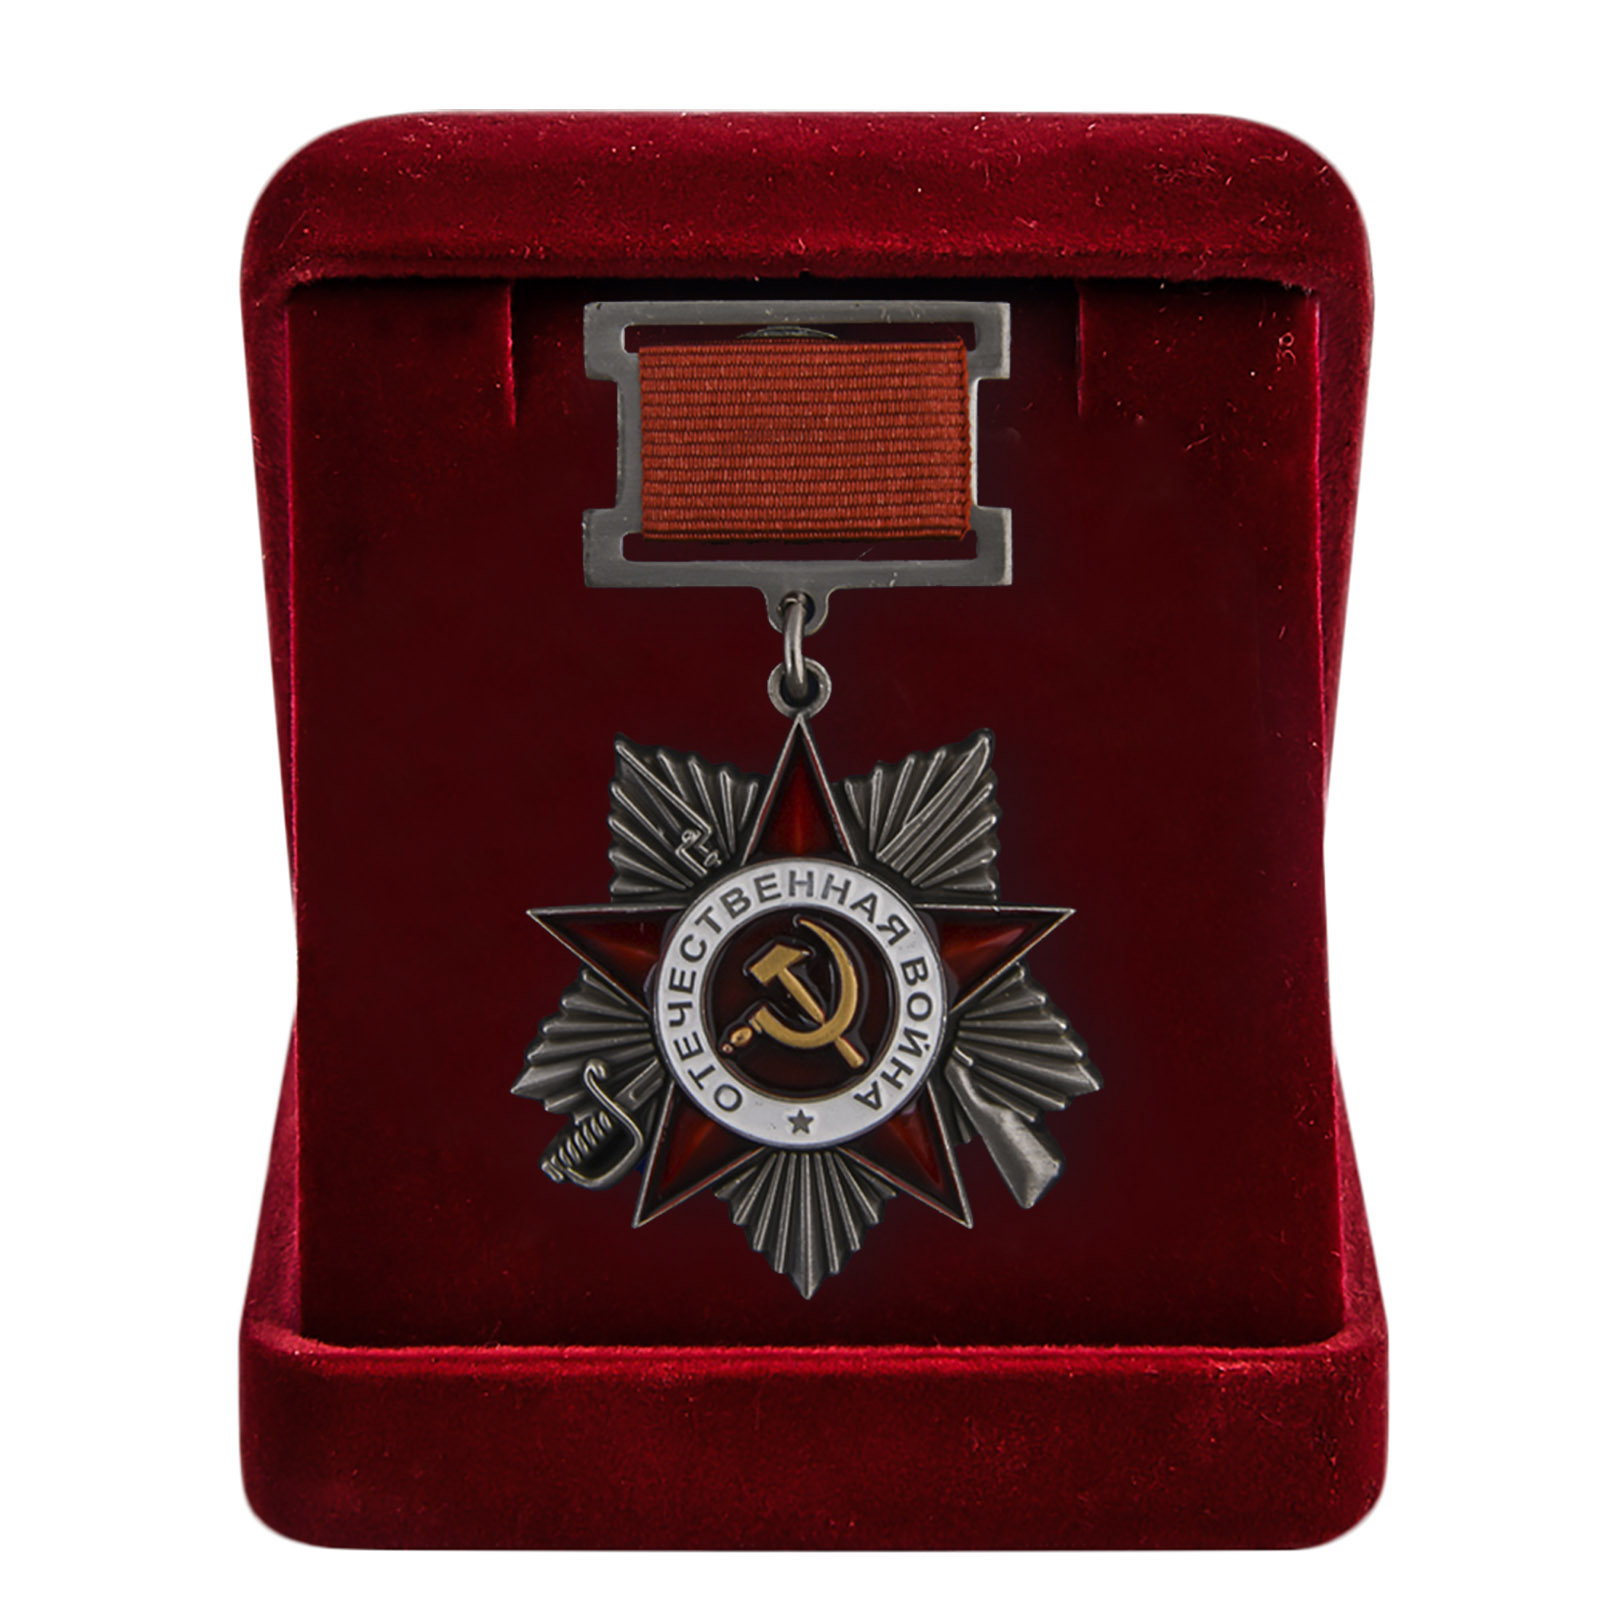 Муляж ордена Великой Отечественной войны 1941-1945 2 степени